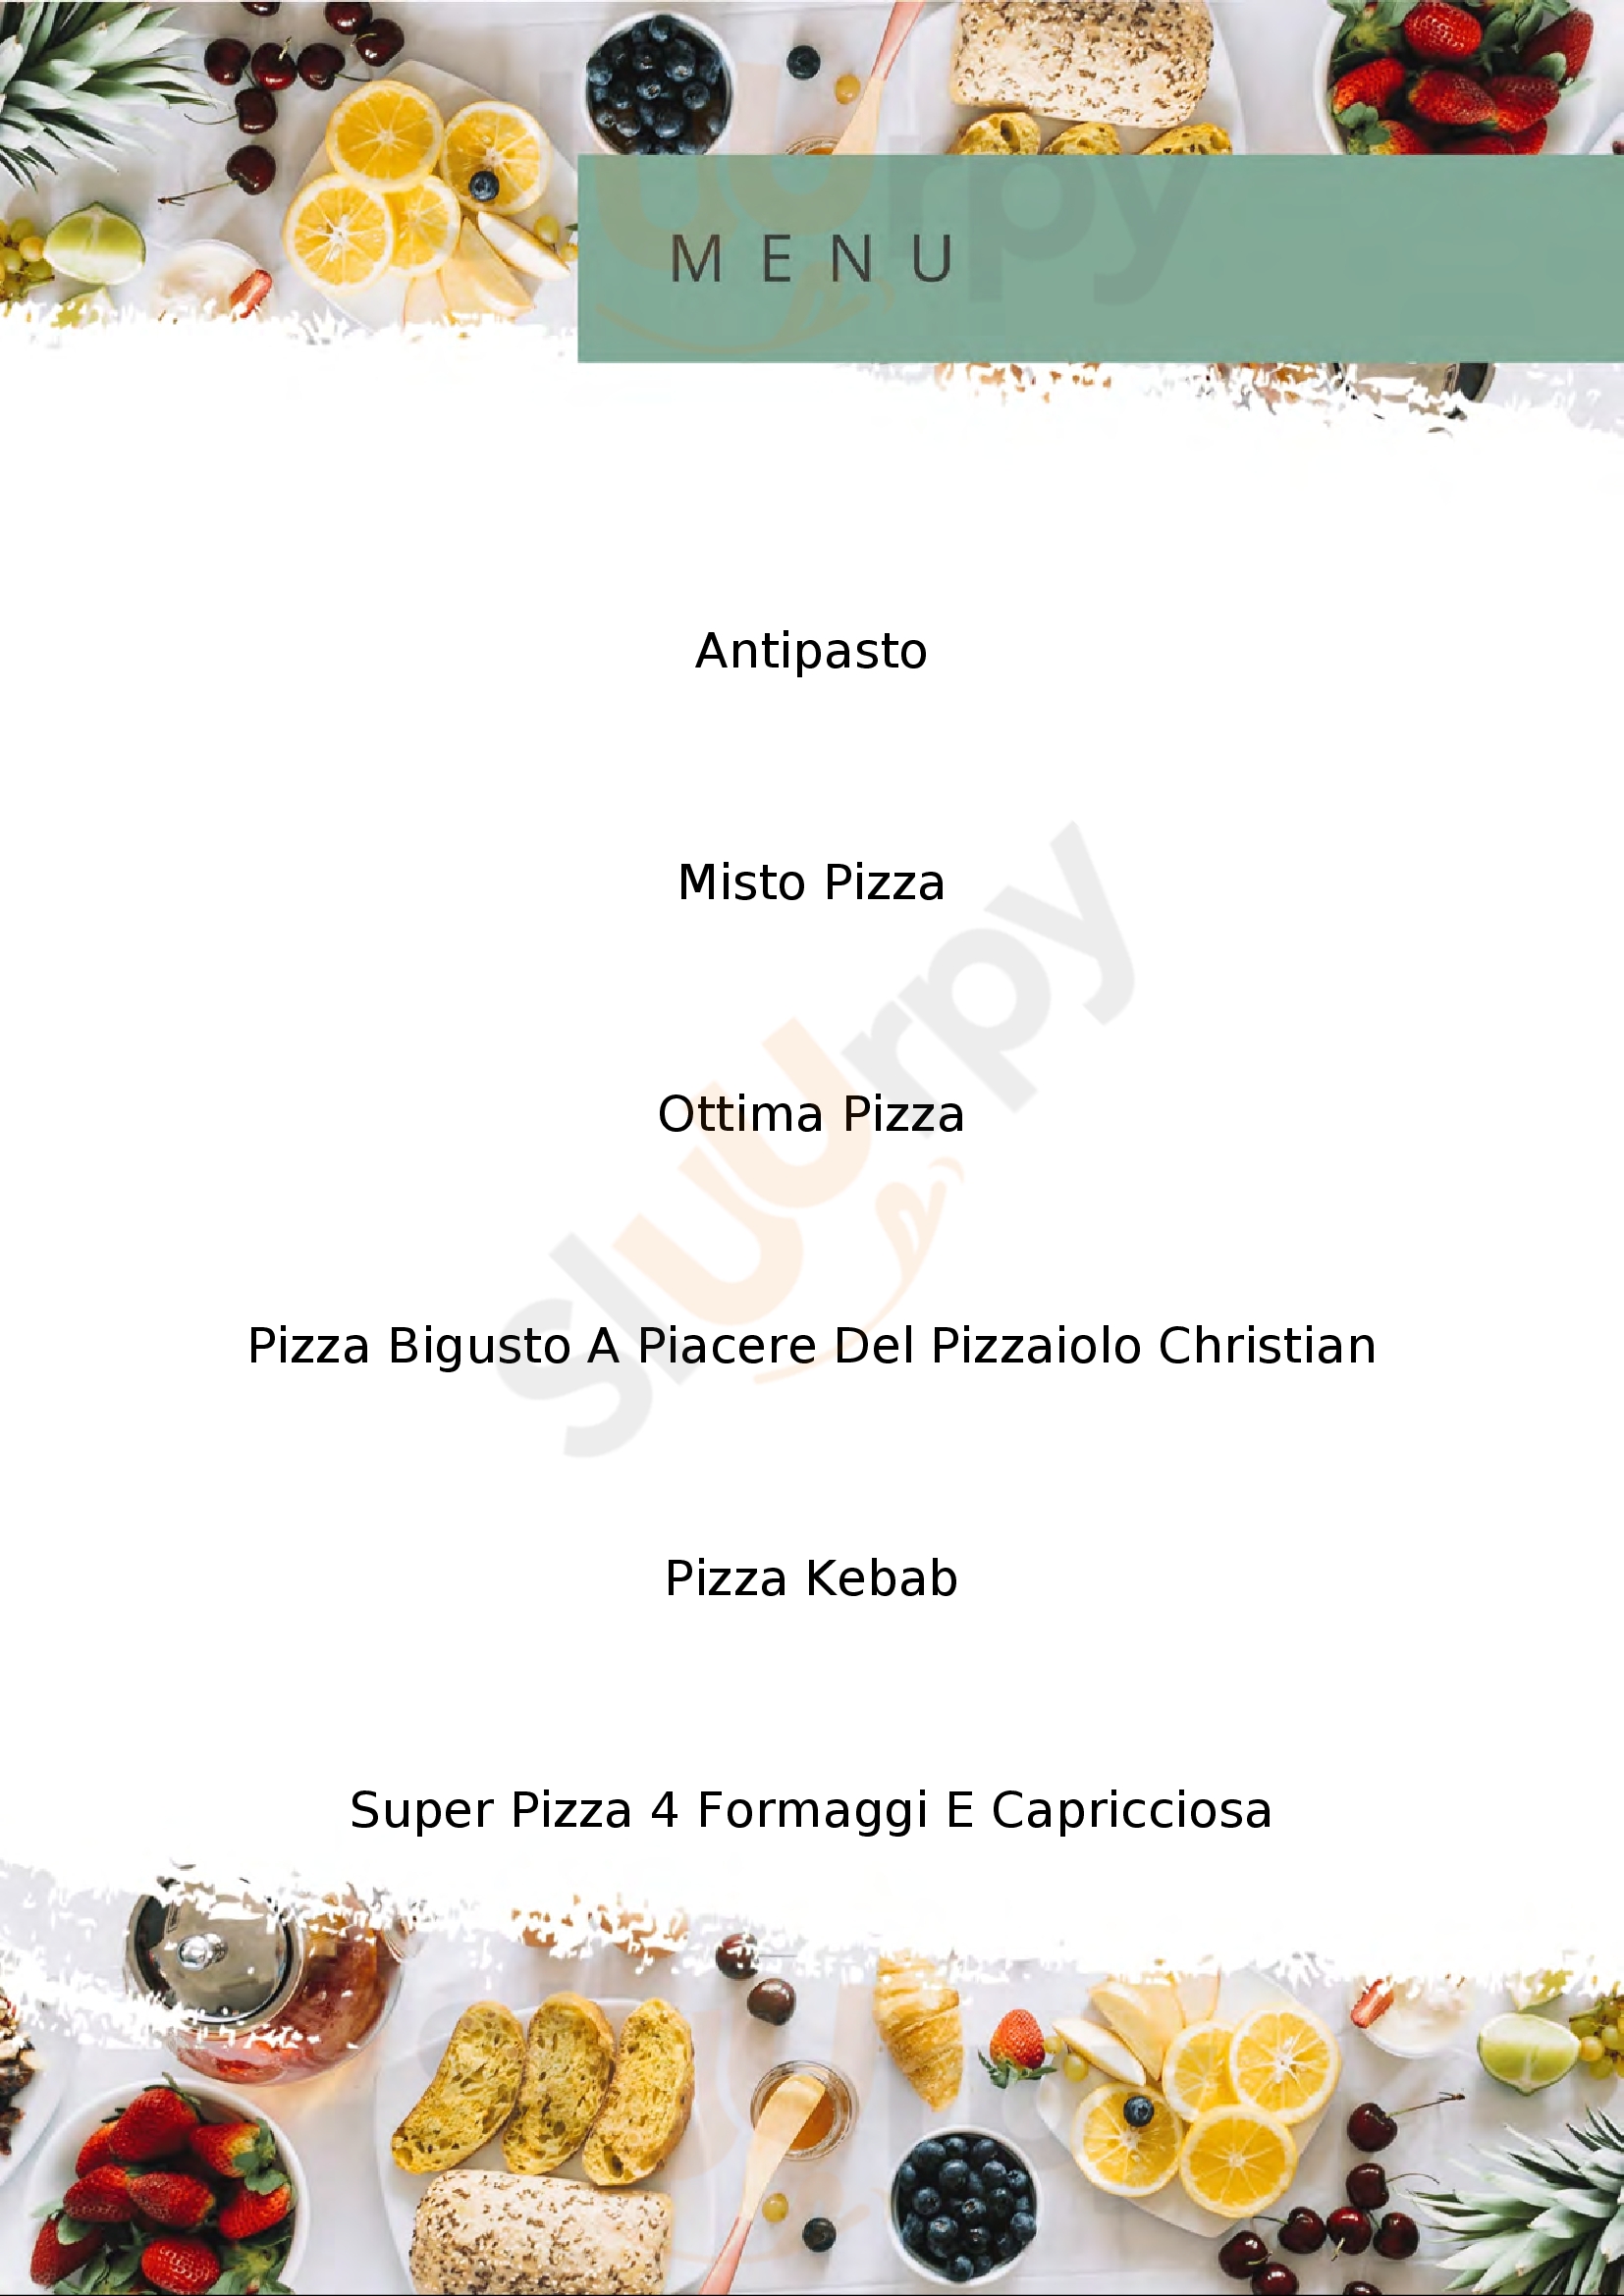 Pizzeria il Capriccio Oliveto Citra menù 1 pagina